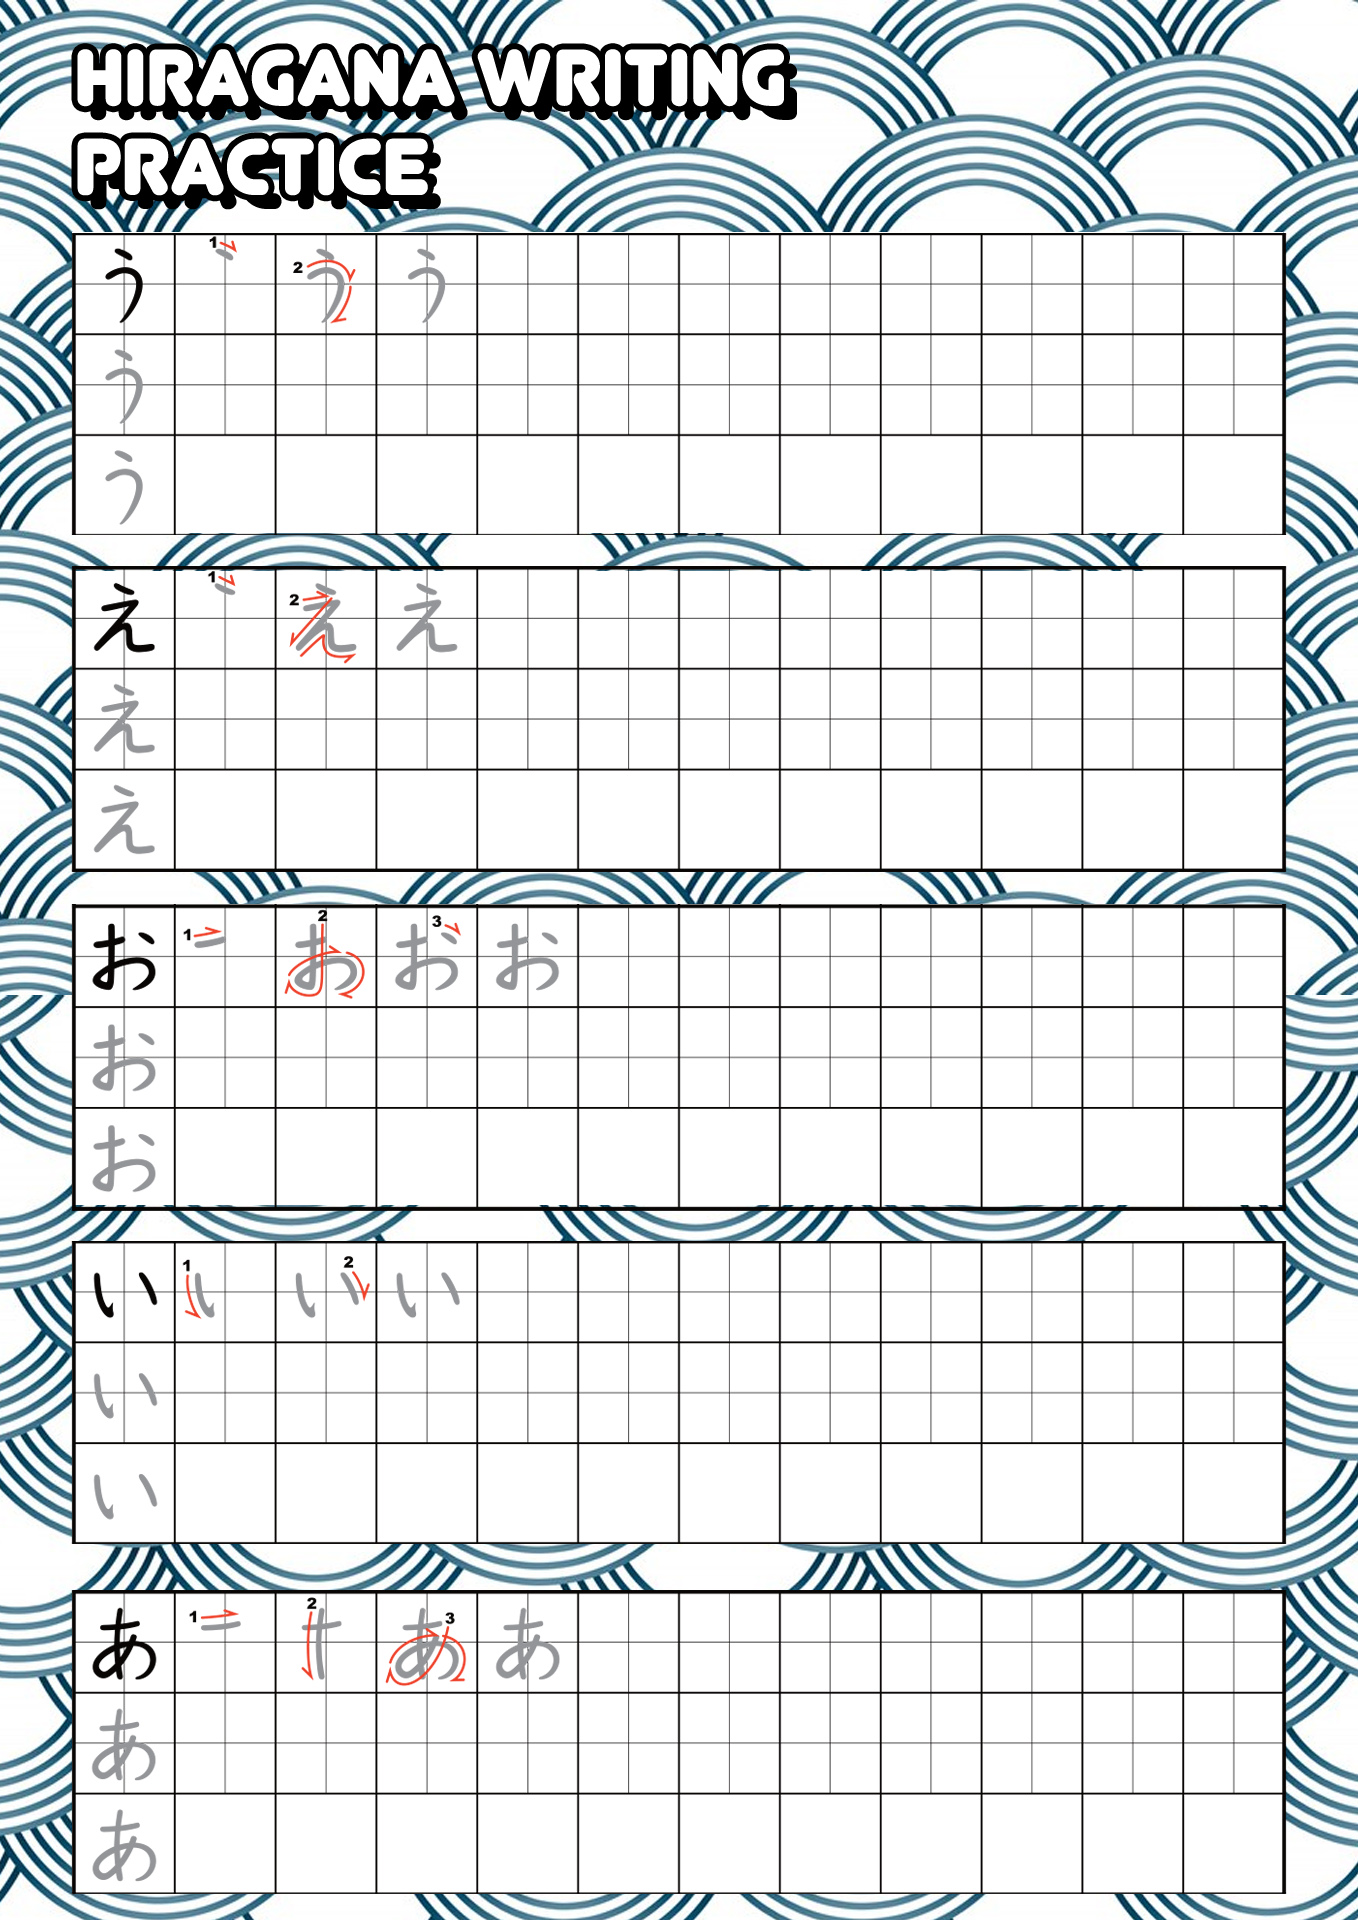 hiragana-practice-sheets-free